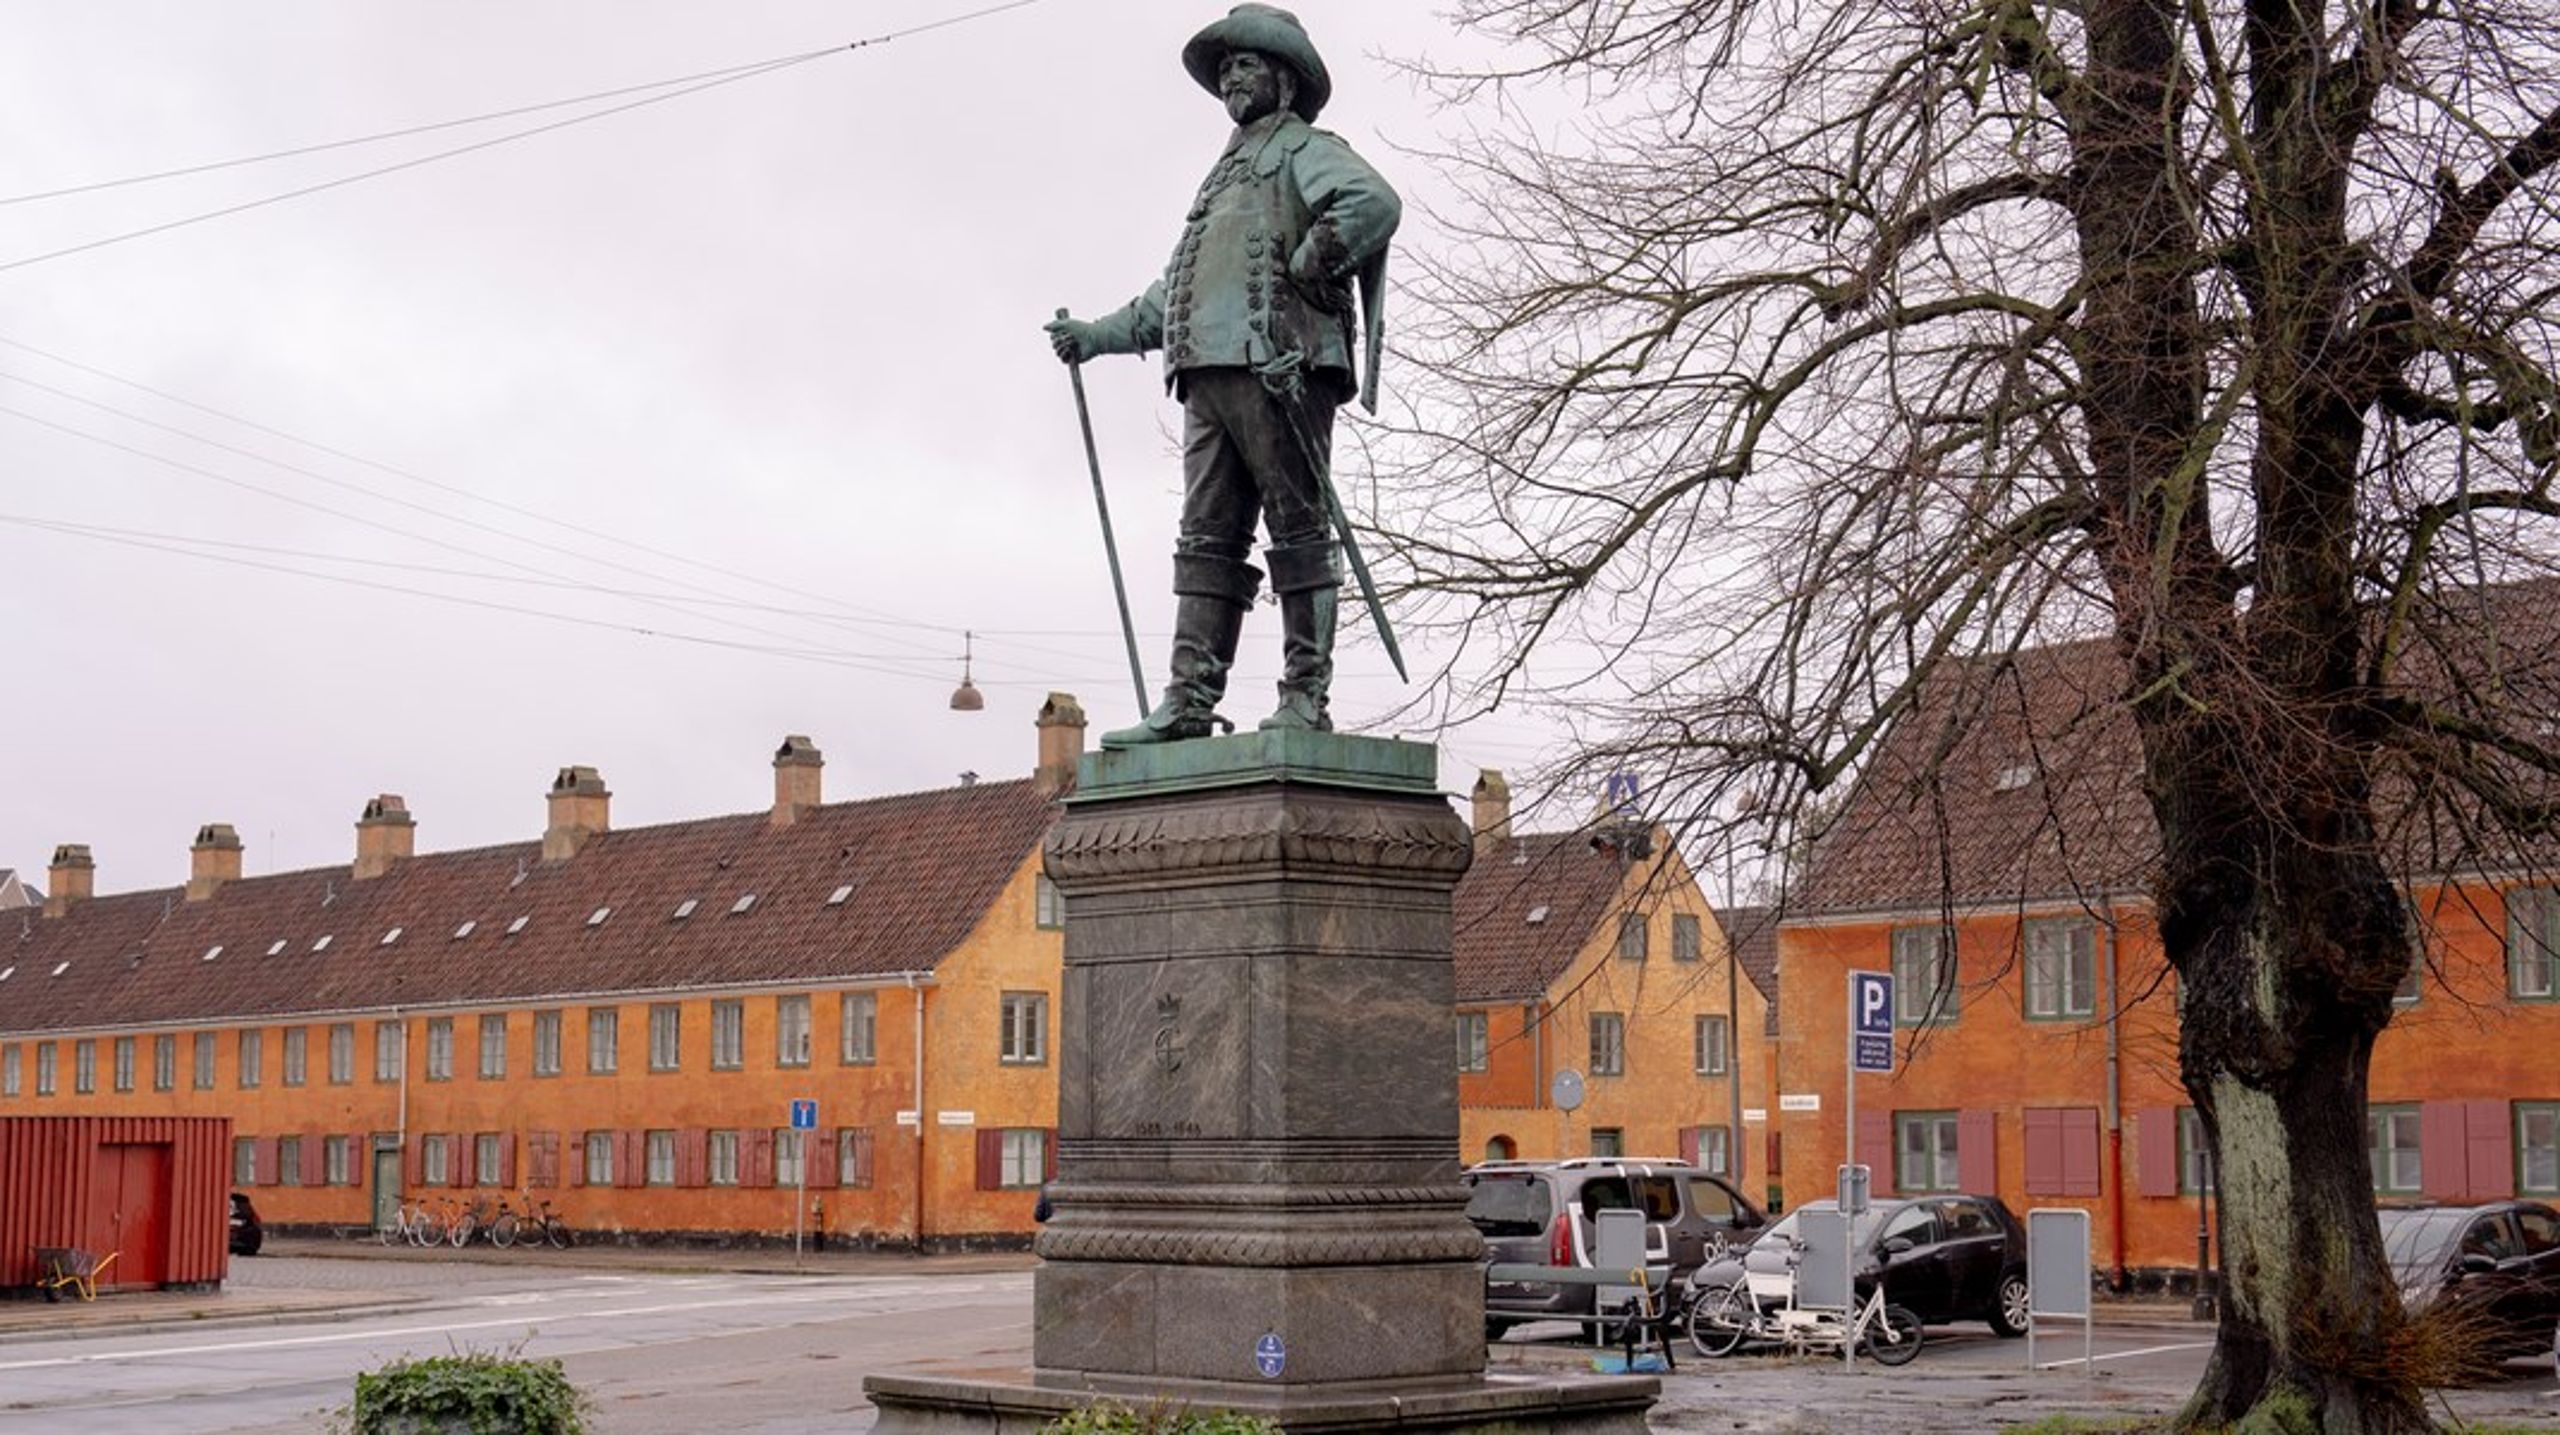 Restaurering af&nbsp;Nyboders Gule Stokke blev næsten dobbelt så dyrt som oprindeligt forventet. Her ses desuden statuen af Christian 4., der i 1600-tallet tog initiativ til at opføre husene til ansatte i flåden.&nbsp;